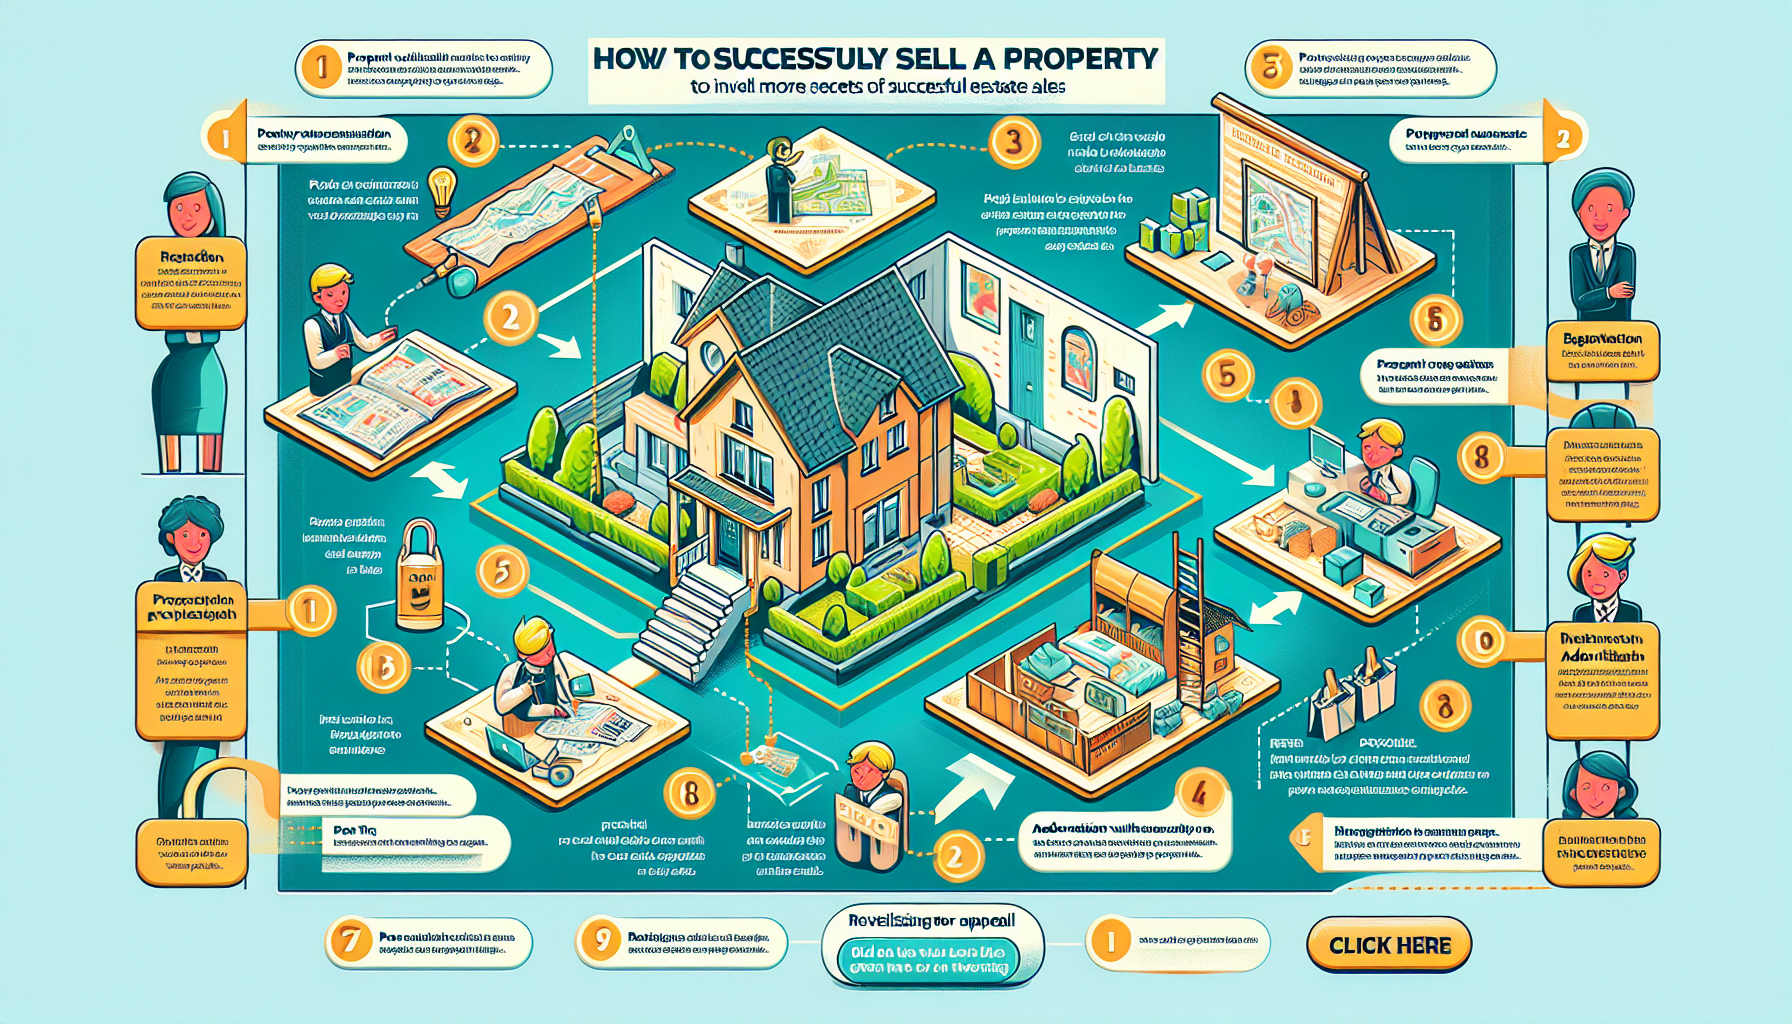 découvrez les étapes essentielles à connaître pour vendre une propriété à bruxelles dans cet article complet. des conseils pratiques et des informations utiles pour réussir votre vente immobilière.